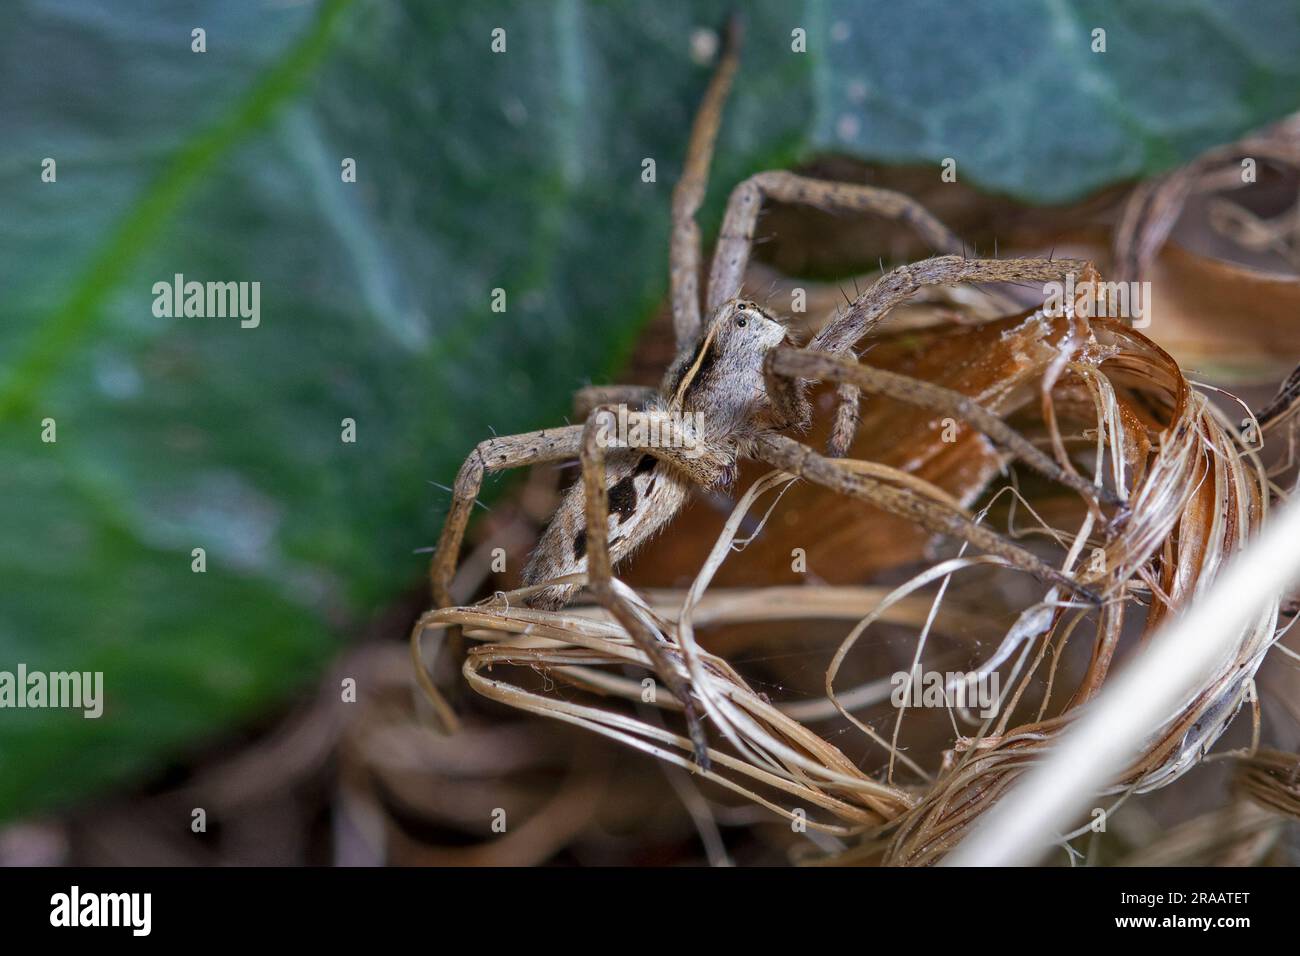 spider in the garden Stock Photo